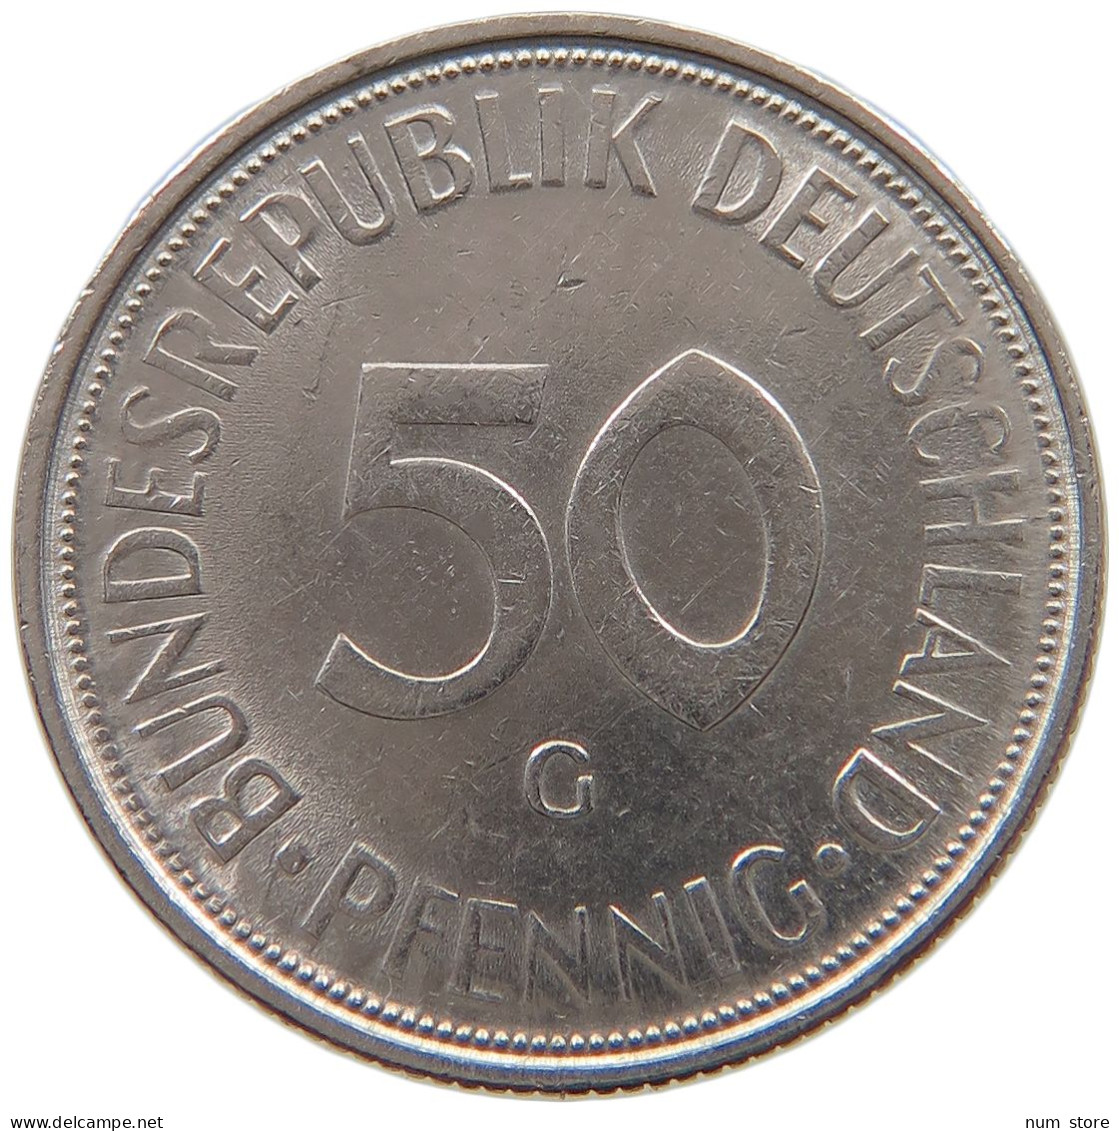 GERMANY WEST 50 PFENNIG 1971 G #a046 0577 - 50 Pfennig